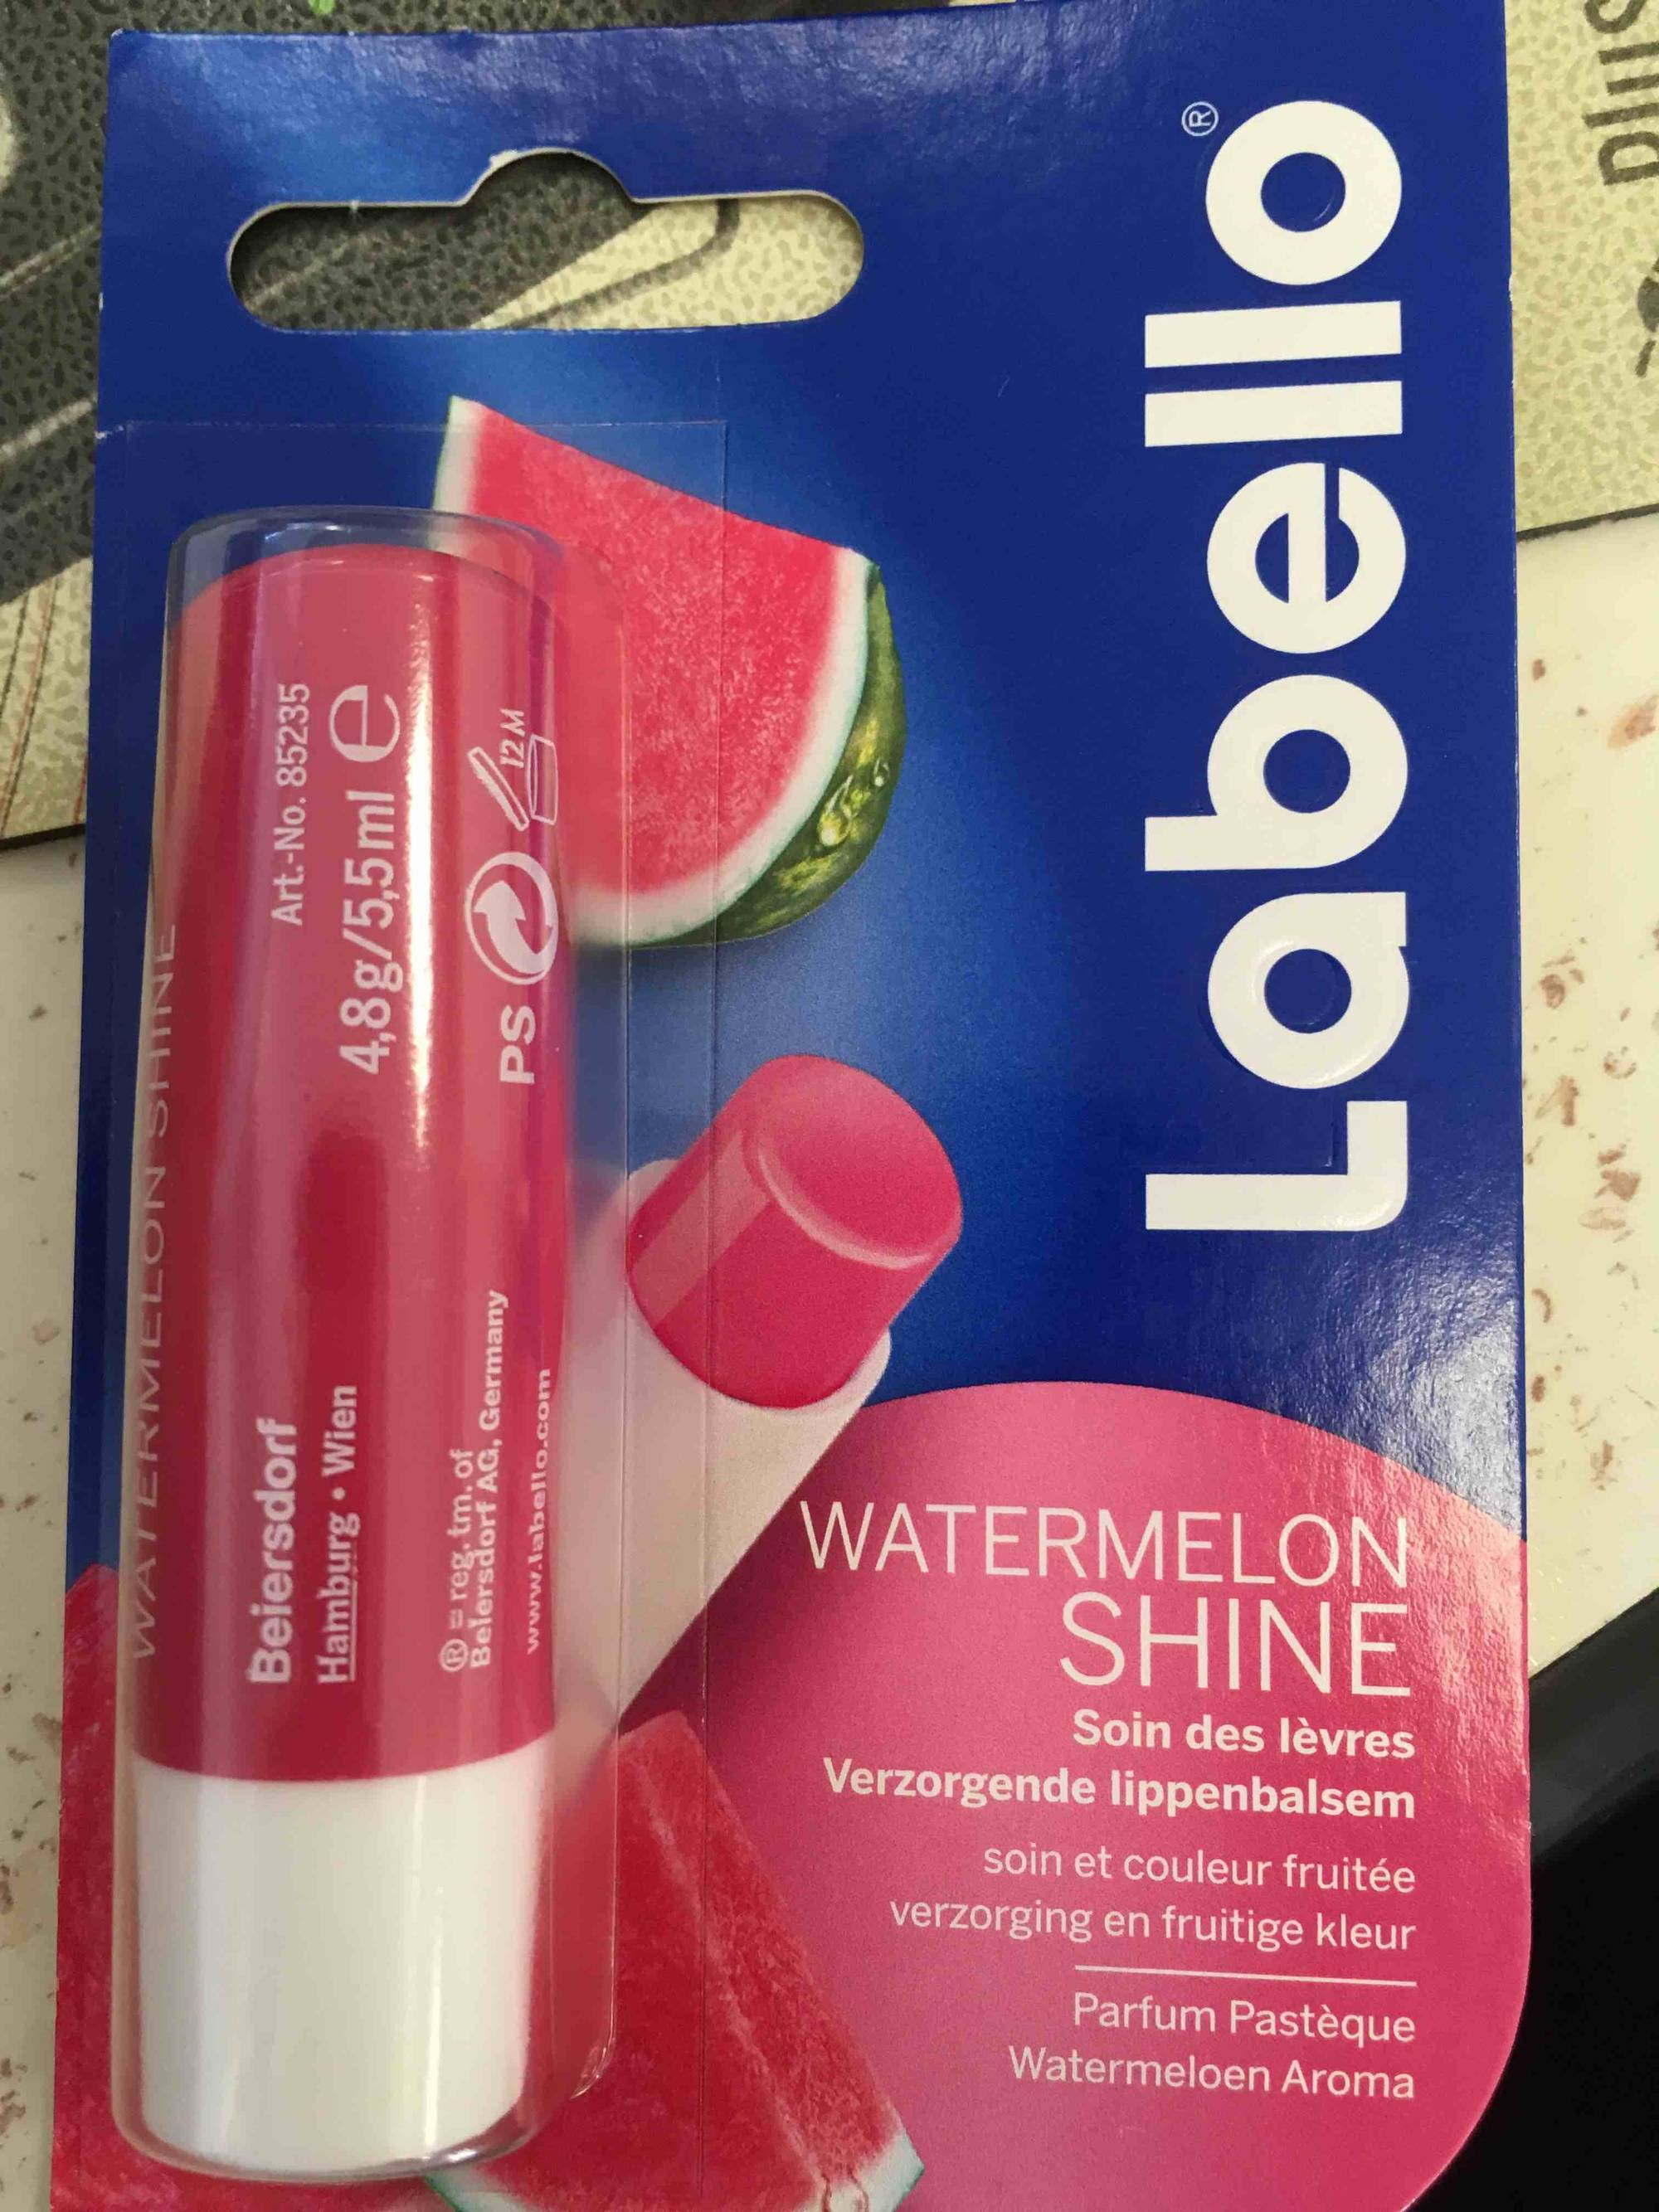 LABELLO - Watermelon shine - Soin des lèvres